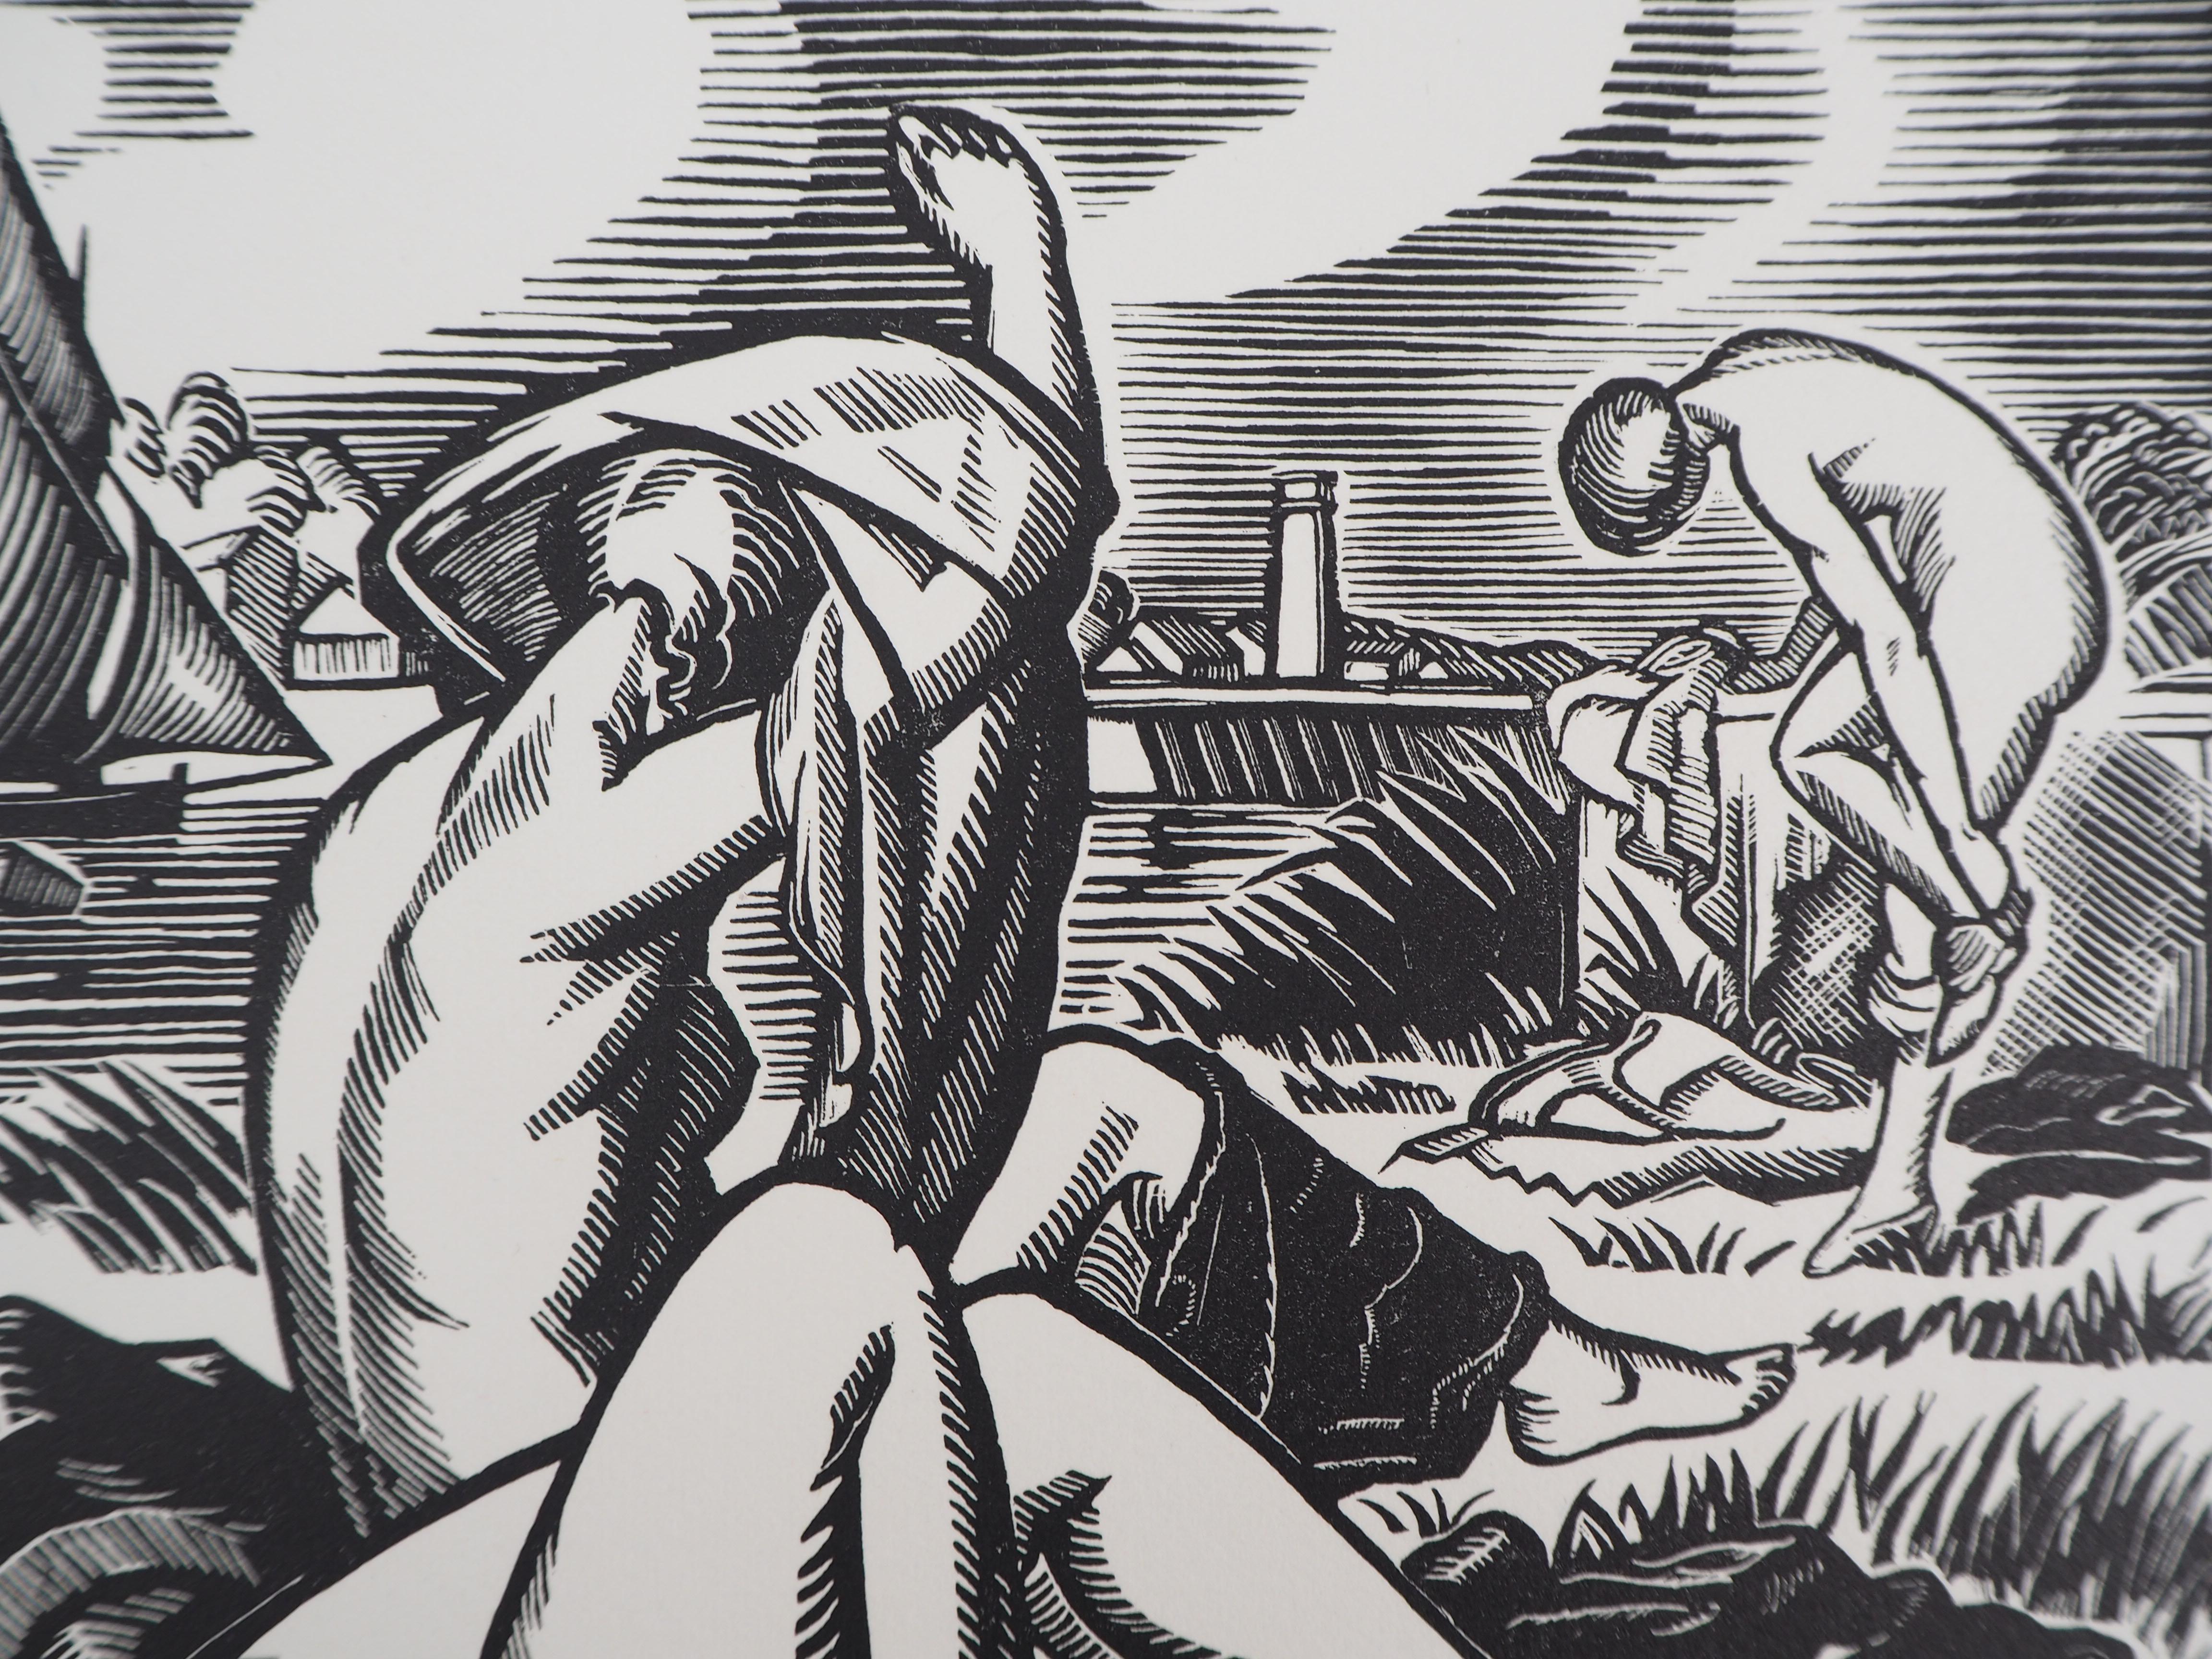 Paul VERA
Hommage an Cezanne : Die Badenden, 1928

Original Holzschnitt
Handsigniert mit Bleistift
Nummeriert /160
Auf Vellum 32,5 x 25,5 cm (ca. 13 x 10 Zoll)
Trägt den Blindstempel des Herausgebers 'Imagier de la Gravure sur Bois' (Lugt